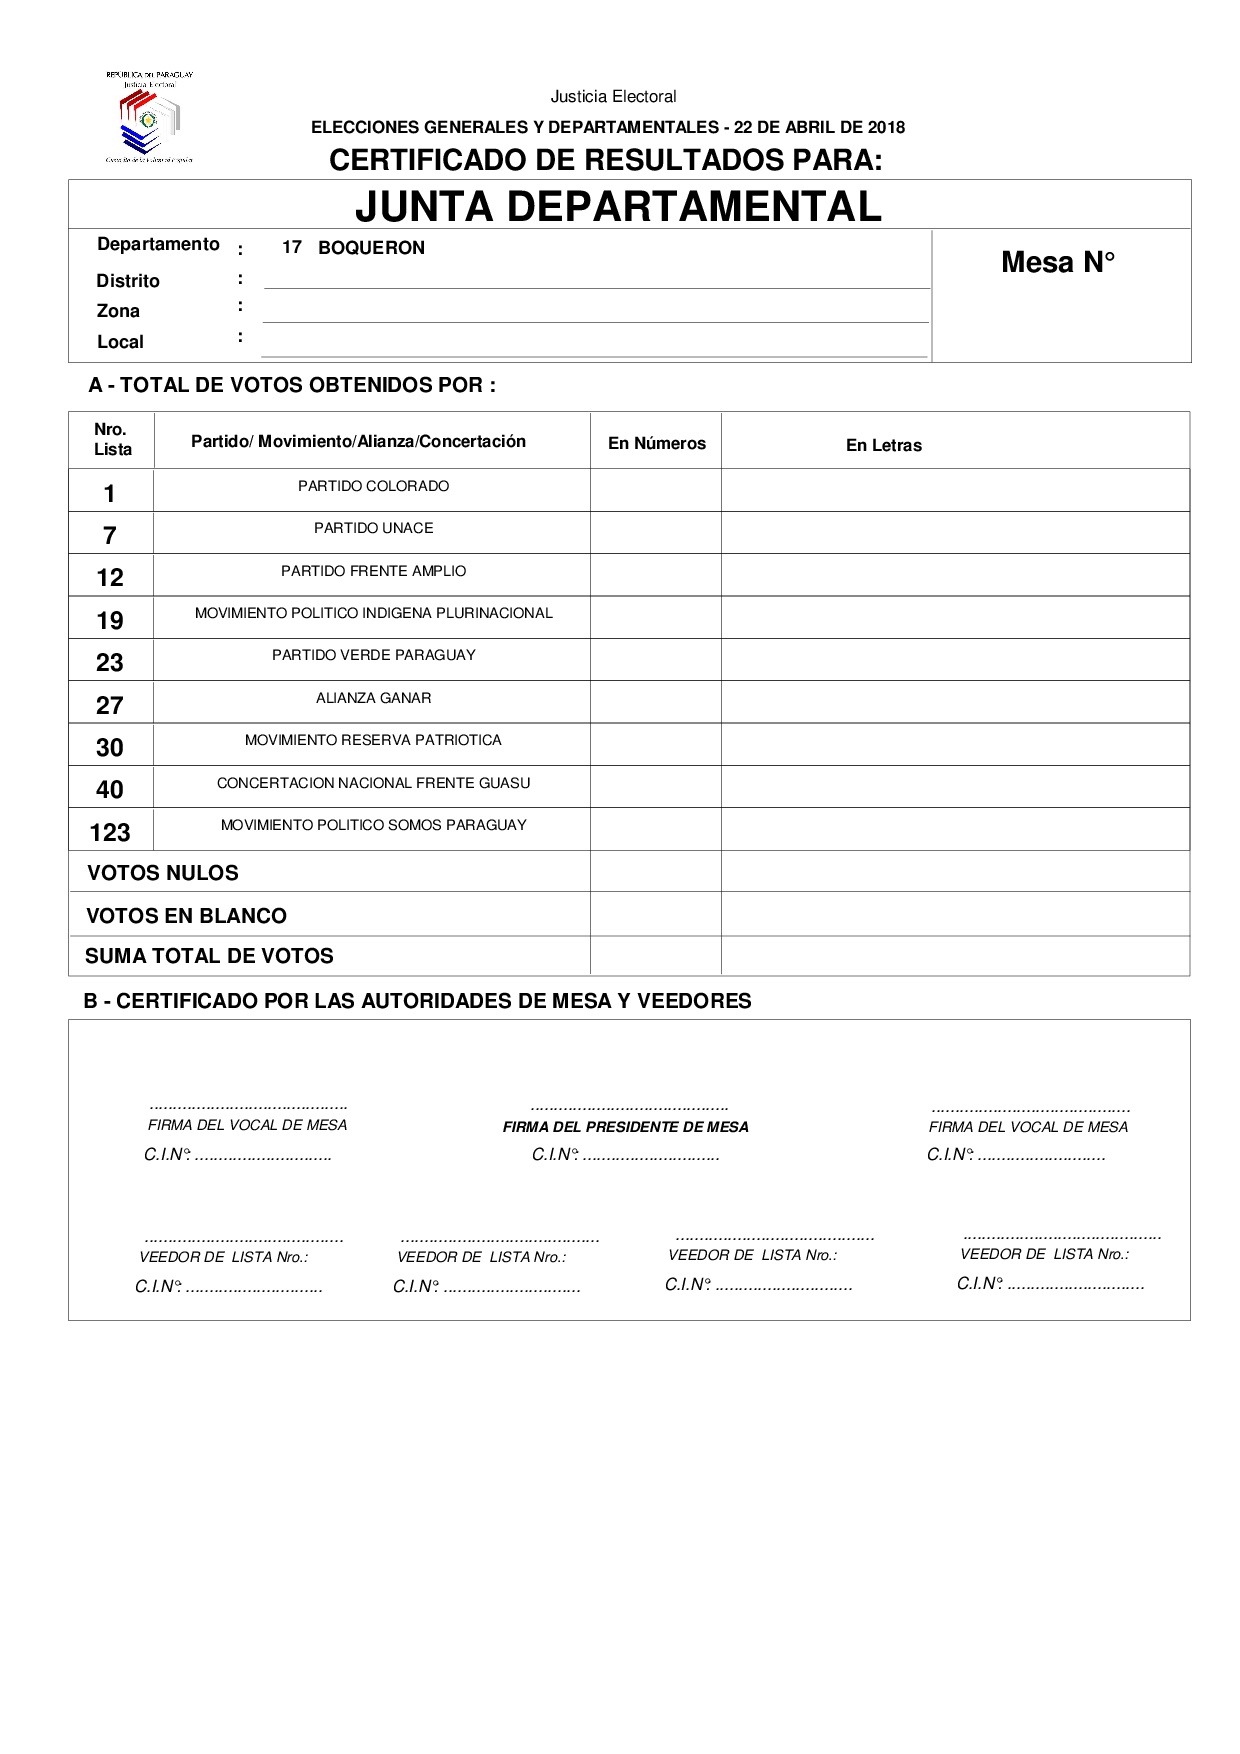 Certificado de Resultados Para JUNTA DEPARTAMENTAL DE BOQUERON